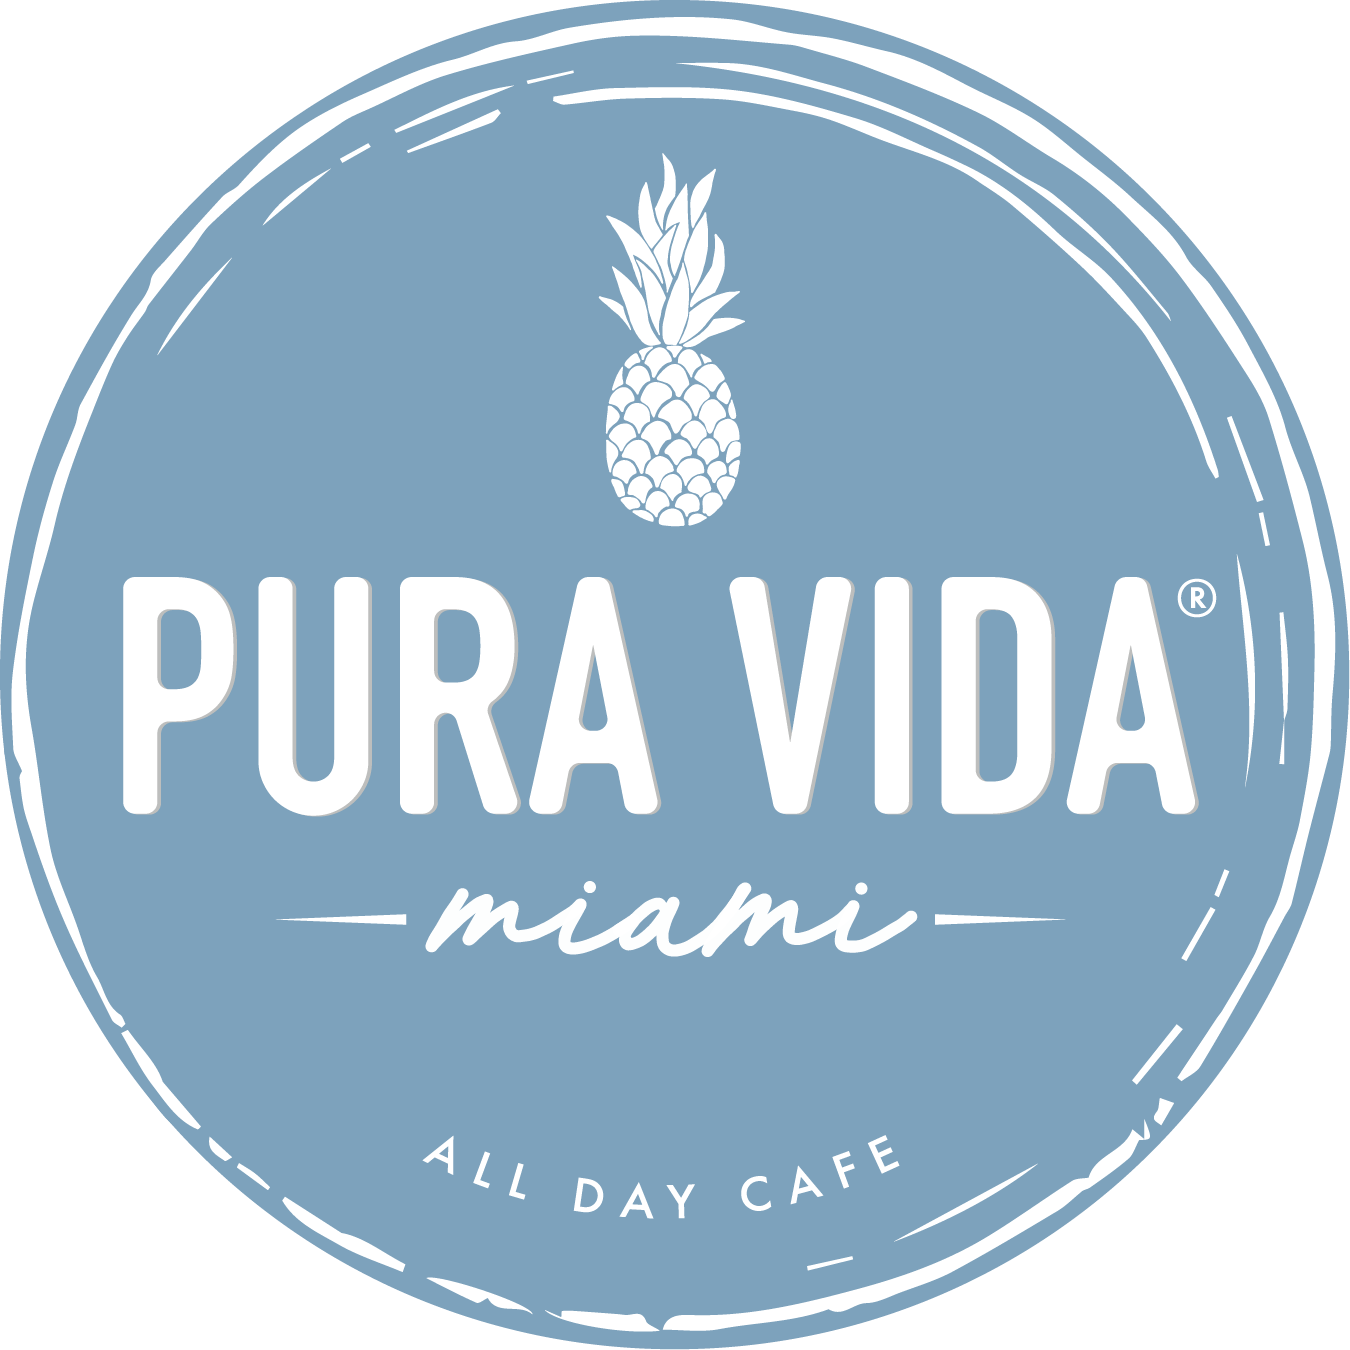 Pura Vida Reserve Padel Pop-Up - Miami, FL 33132 - (305)535-4142 | ShowMeLocal.com